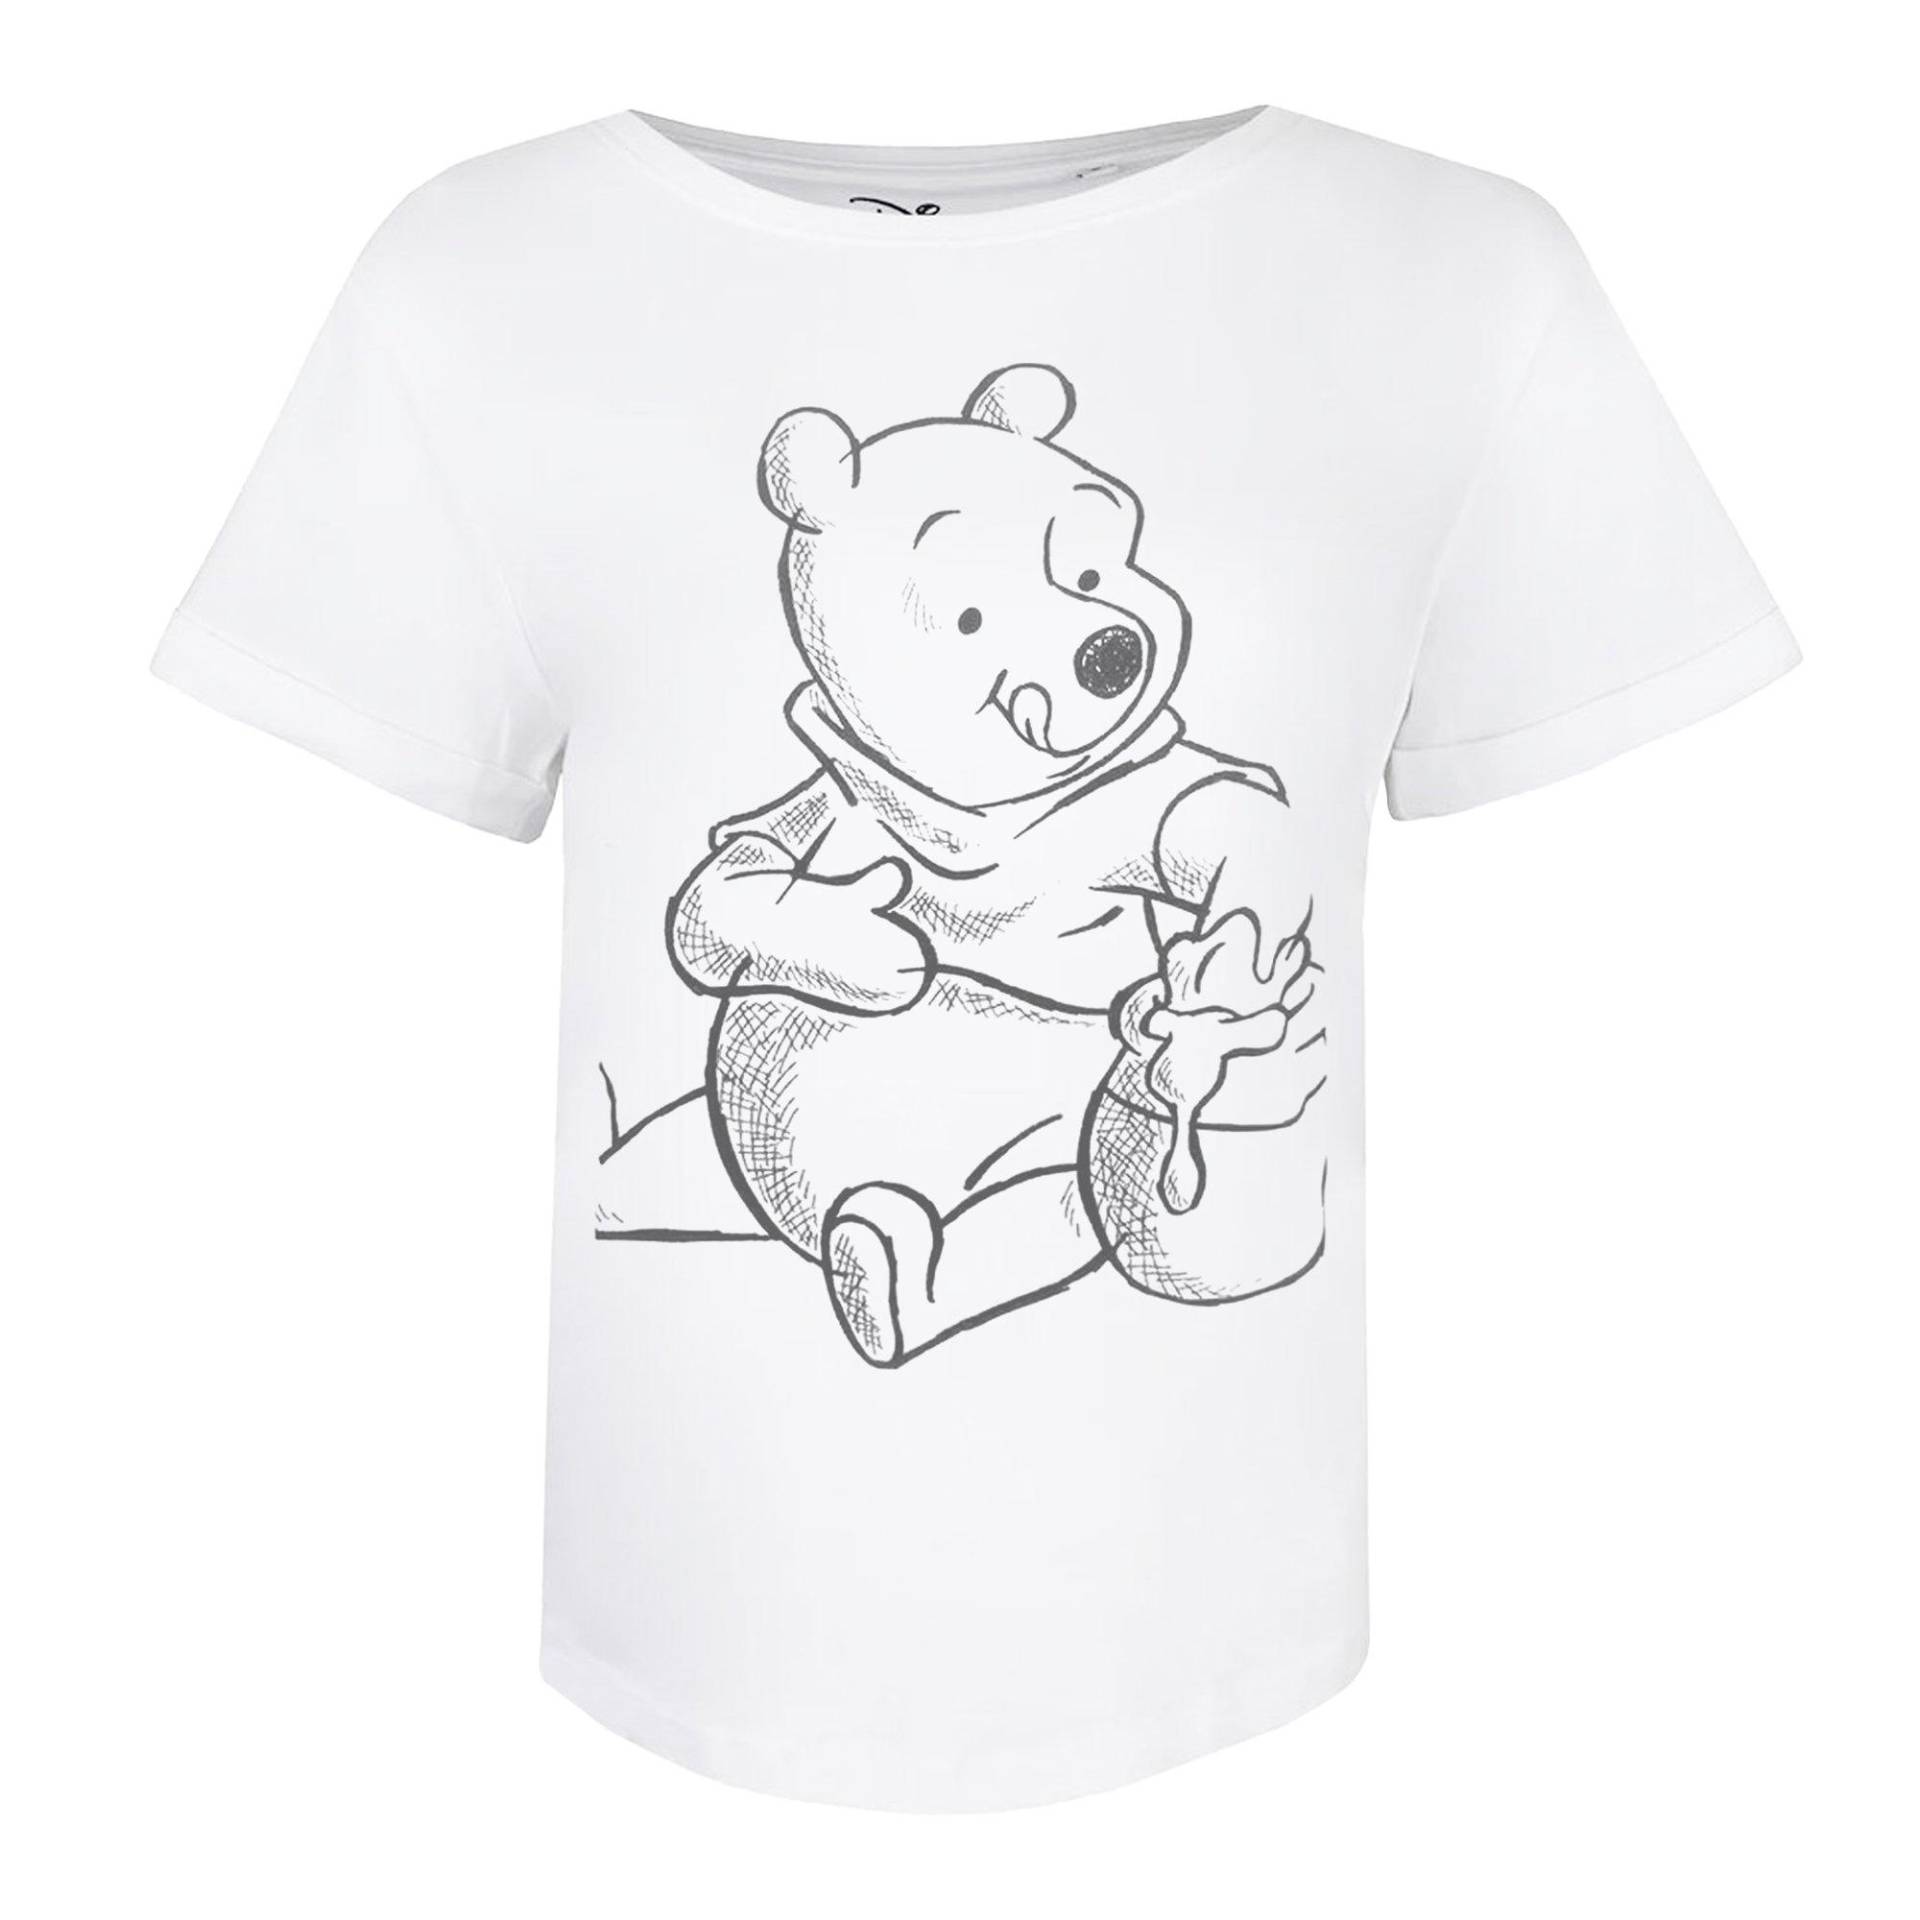 Tshirt Damen Weiss S von Winnie the Pooh